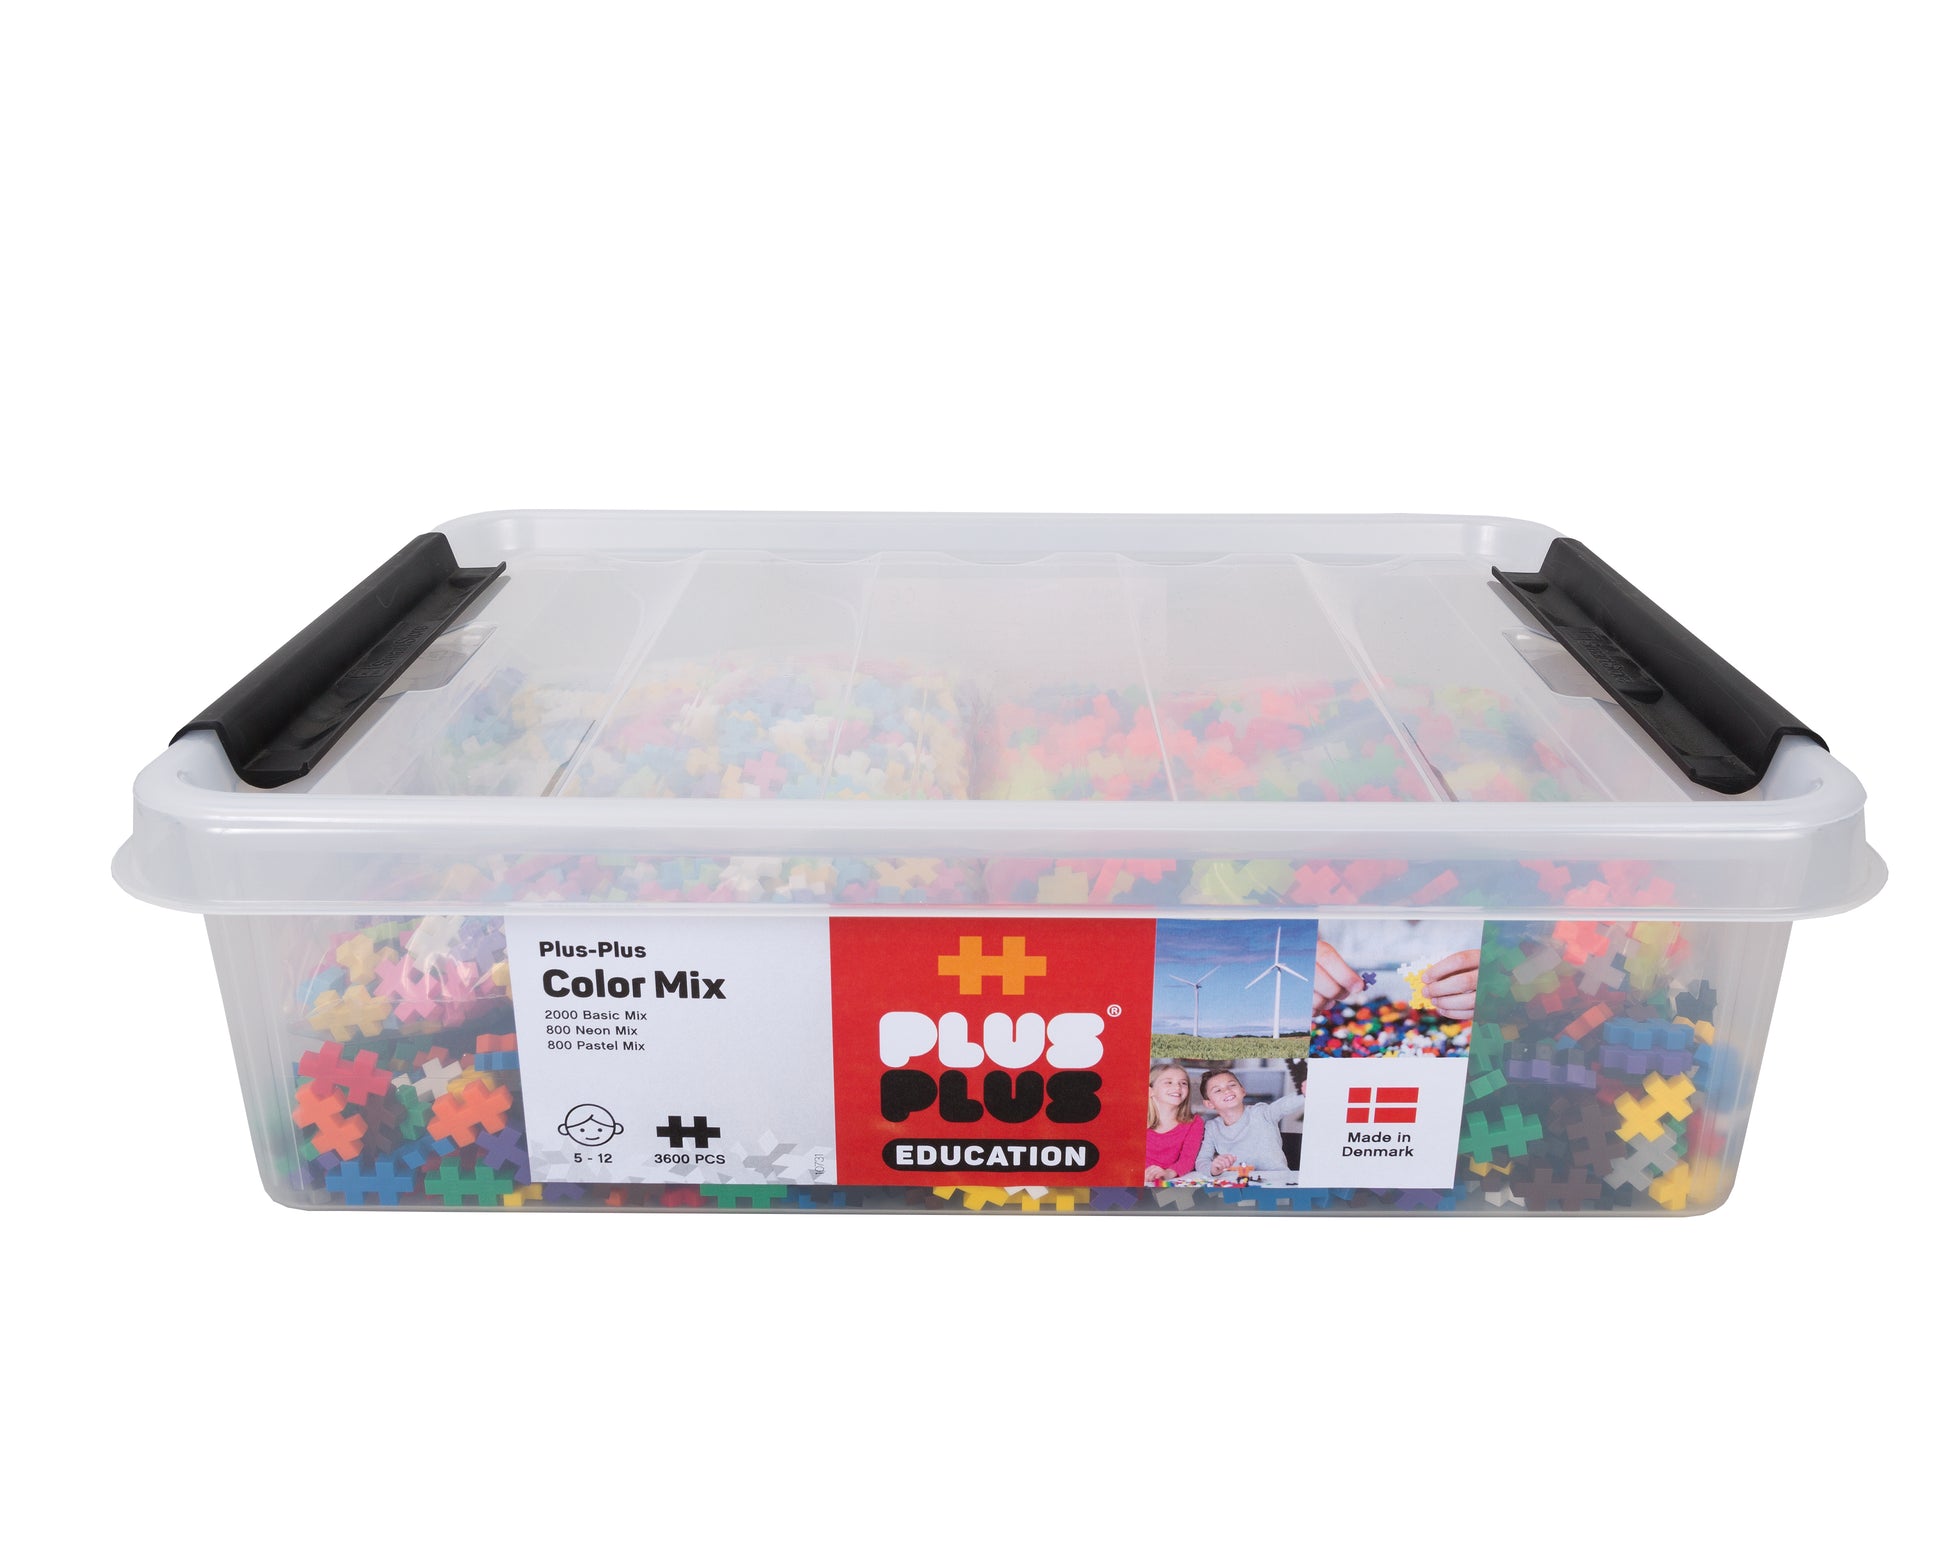 Educatie box plus-plus 3600 color mix